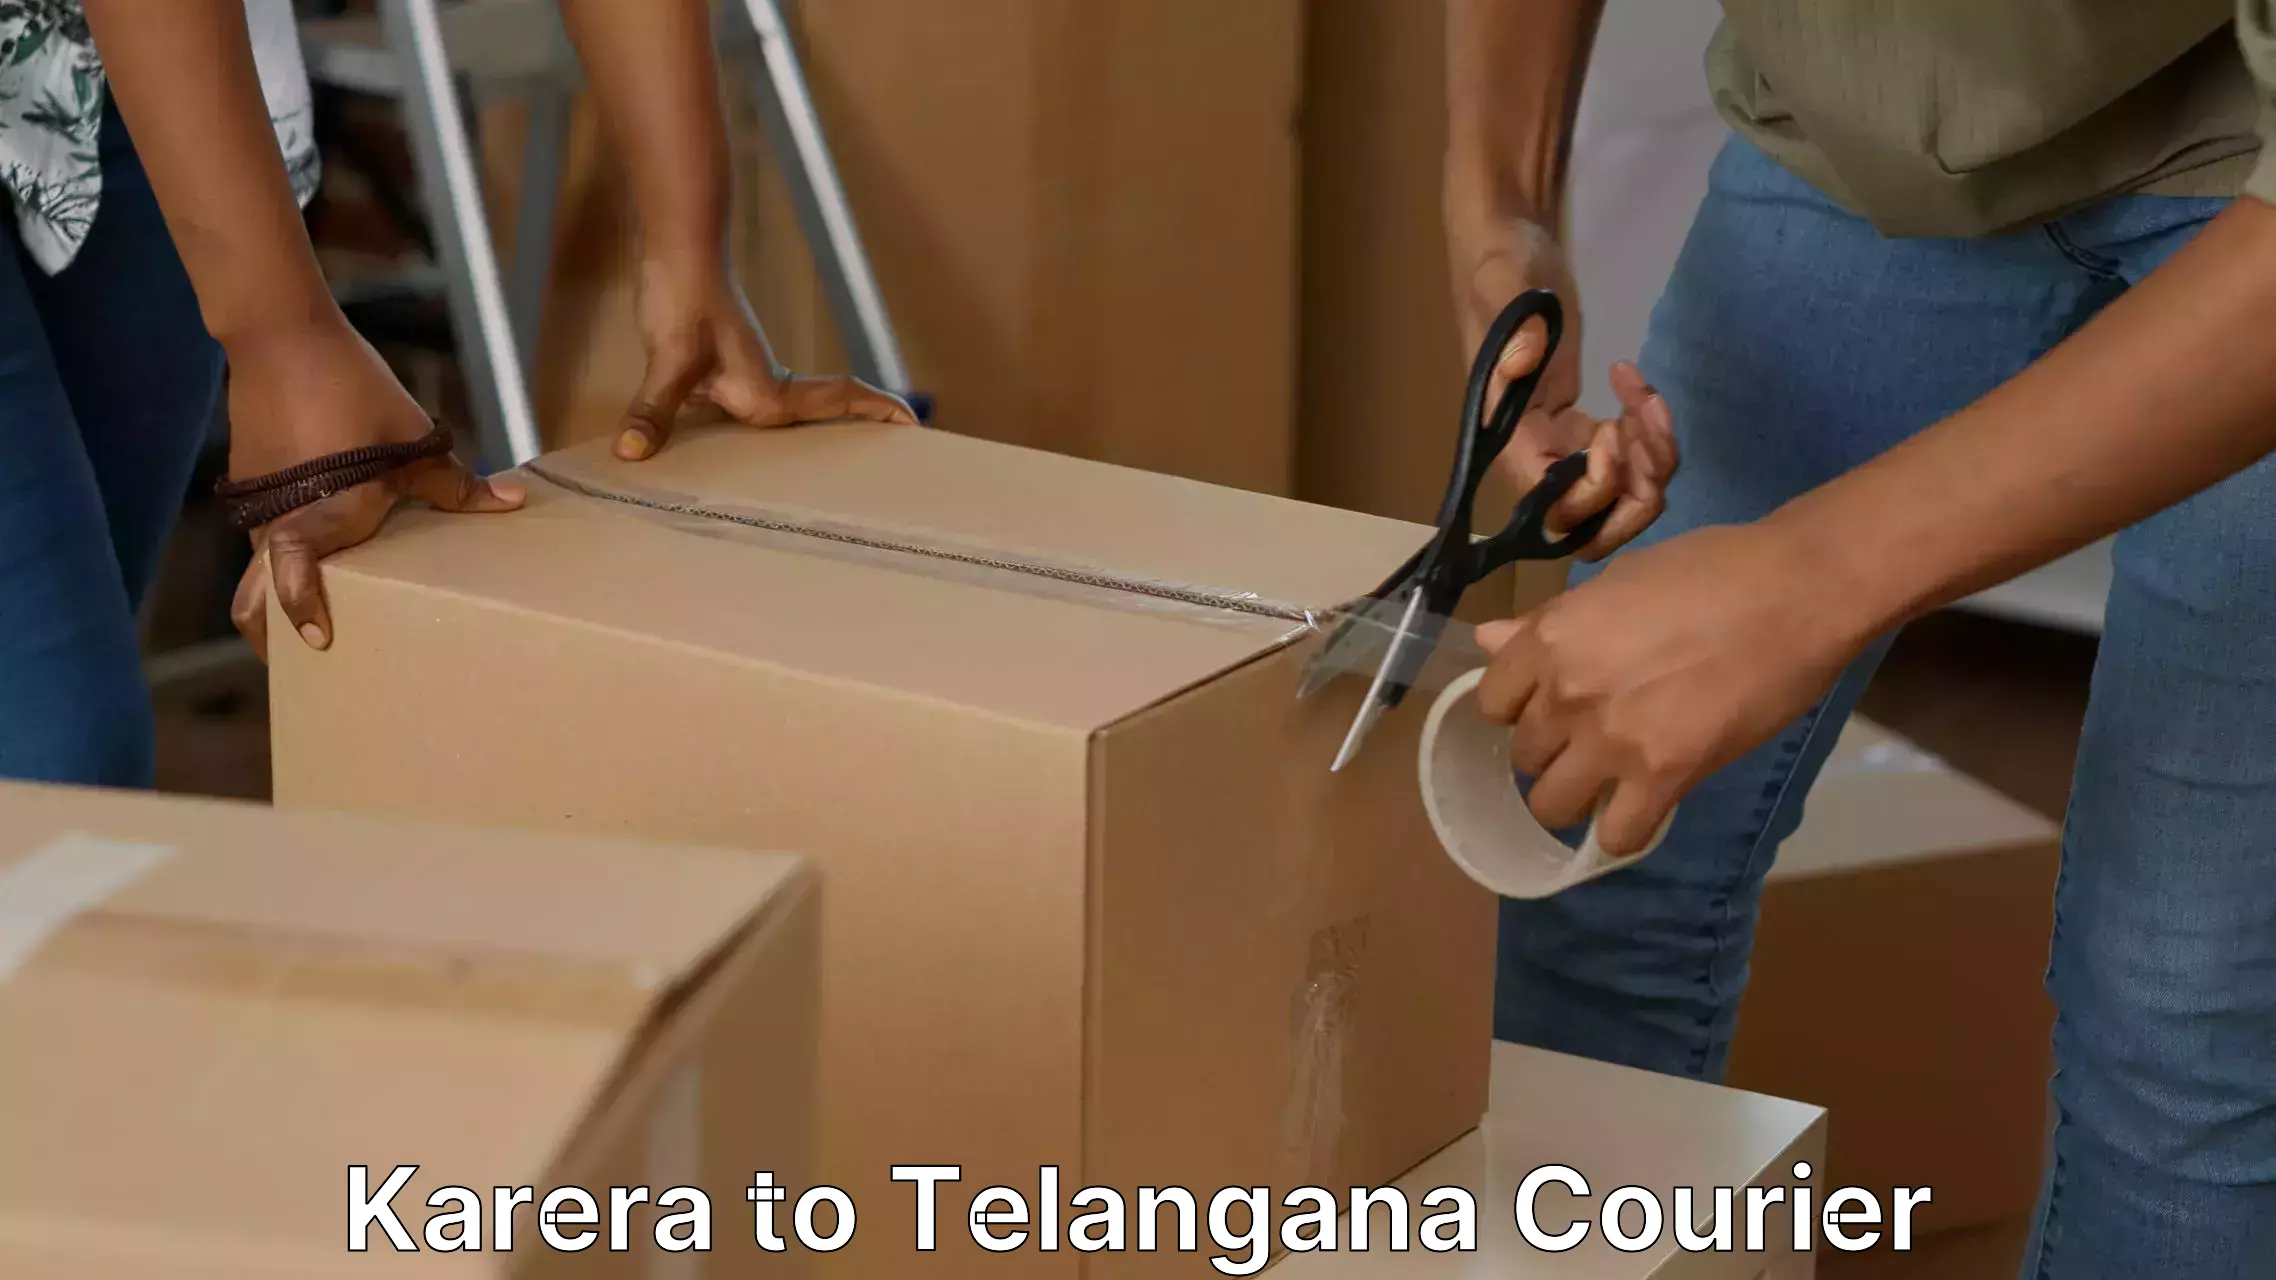 Furniture transport services Karera to Telangana